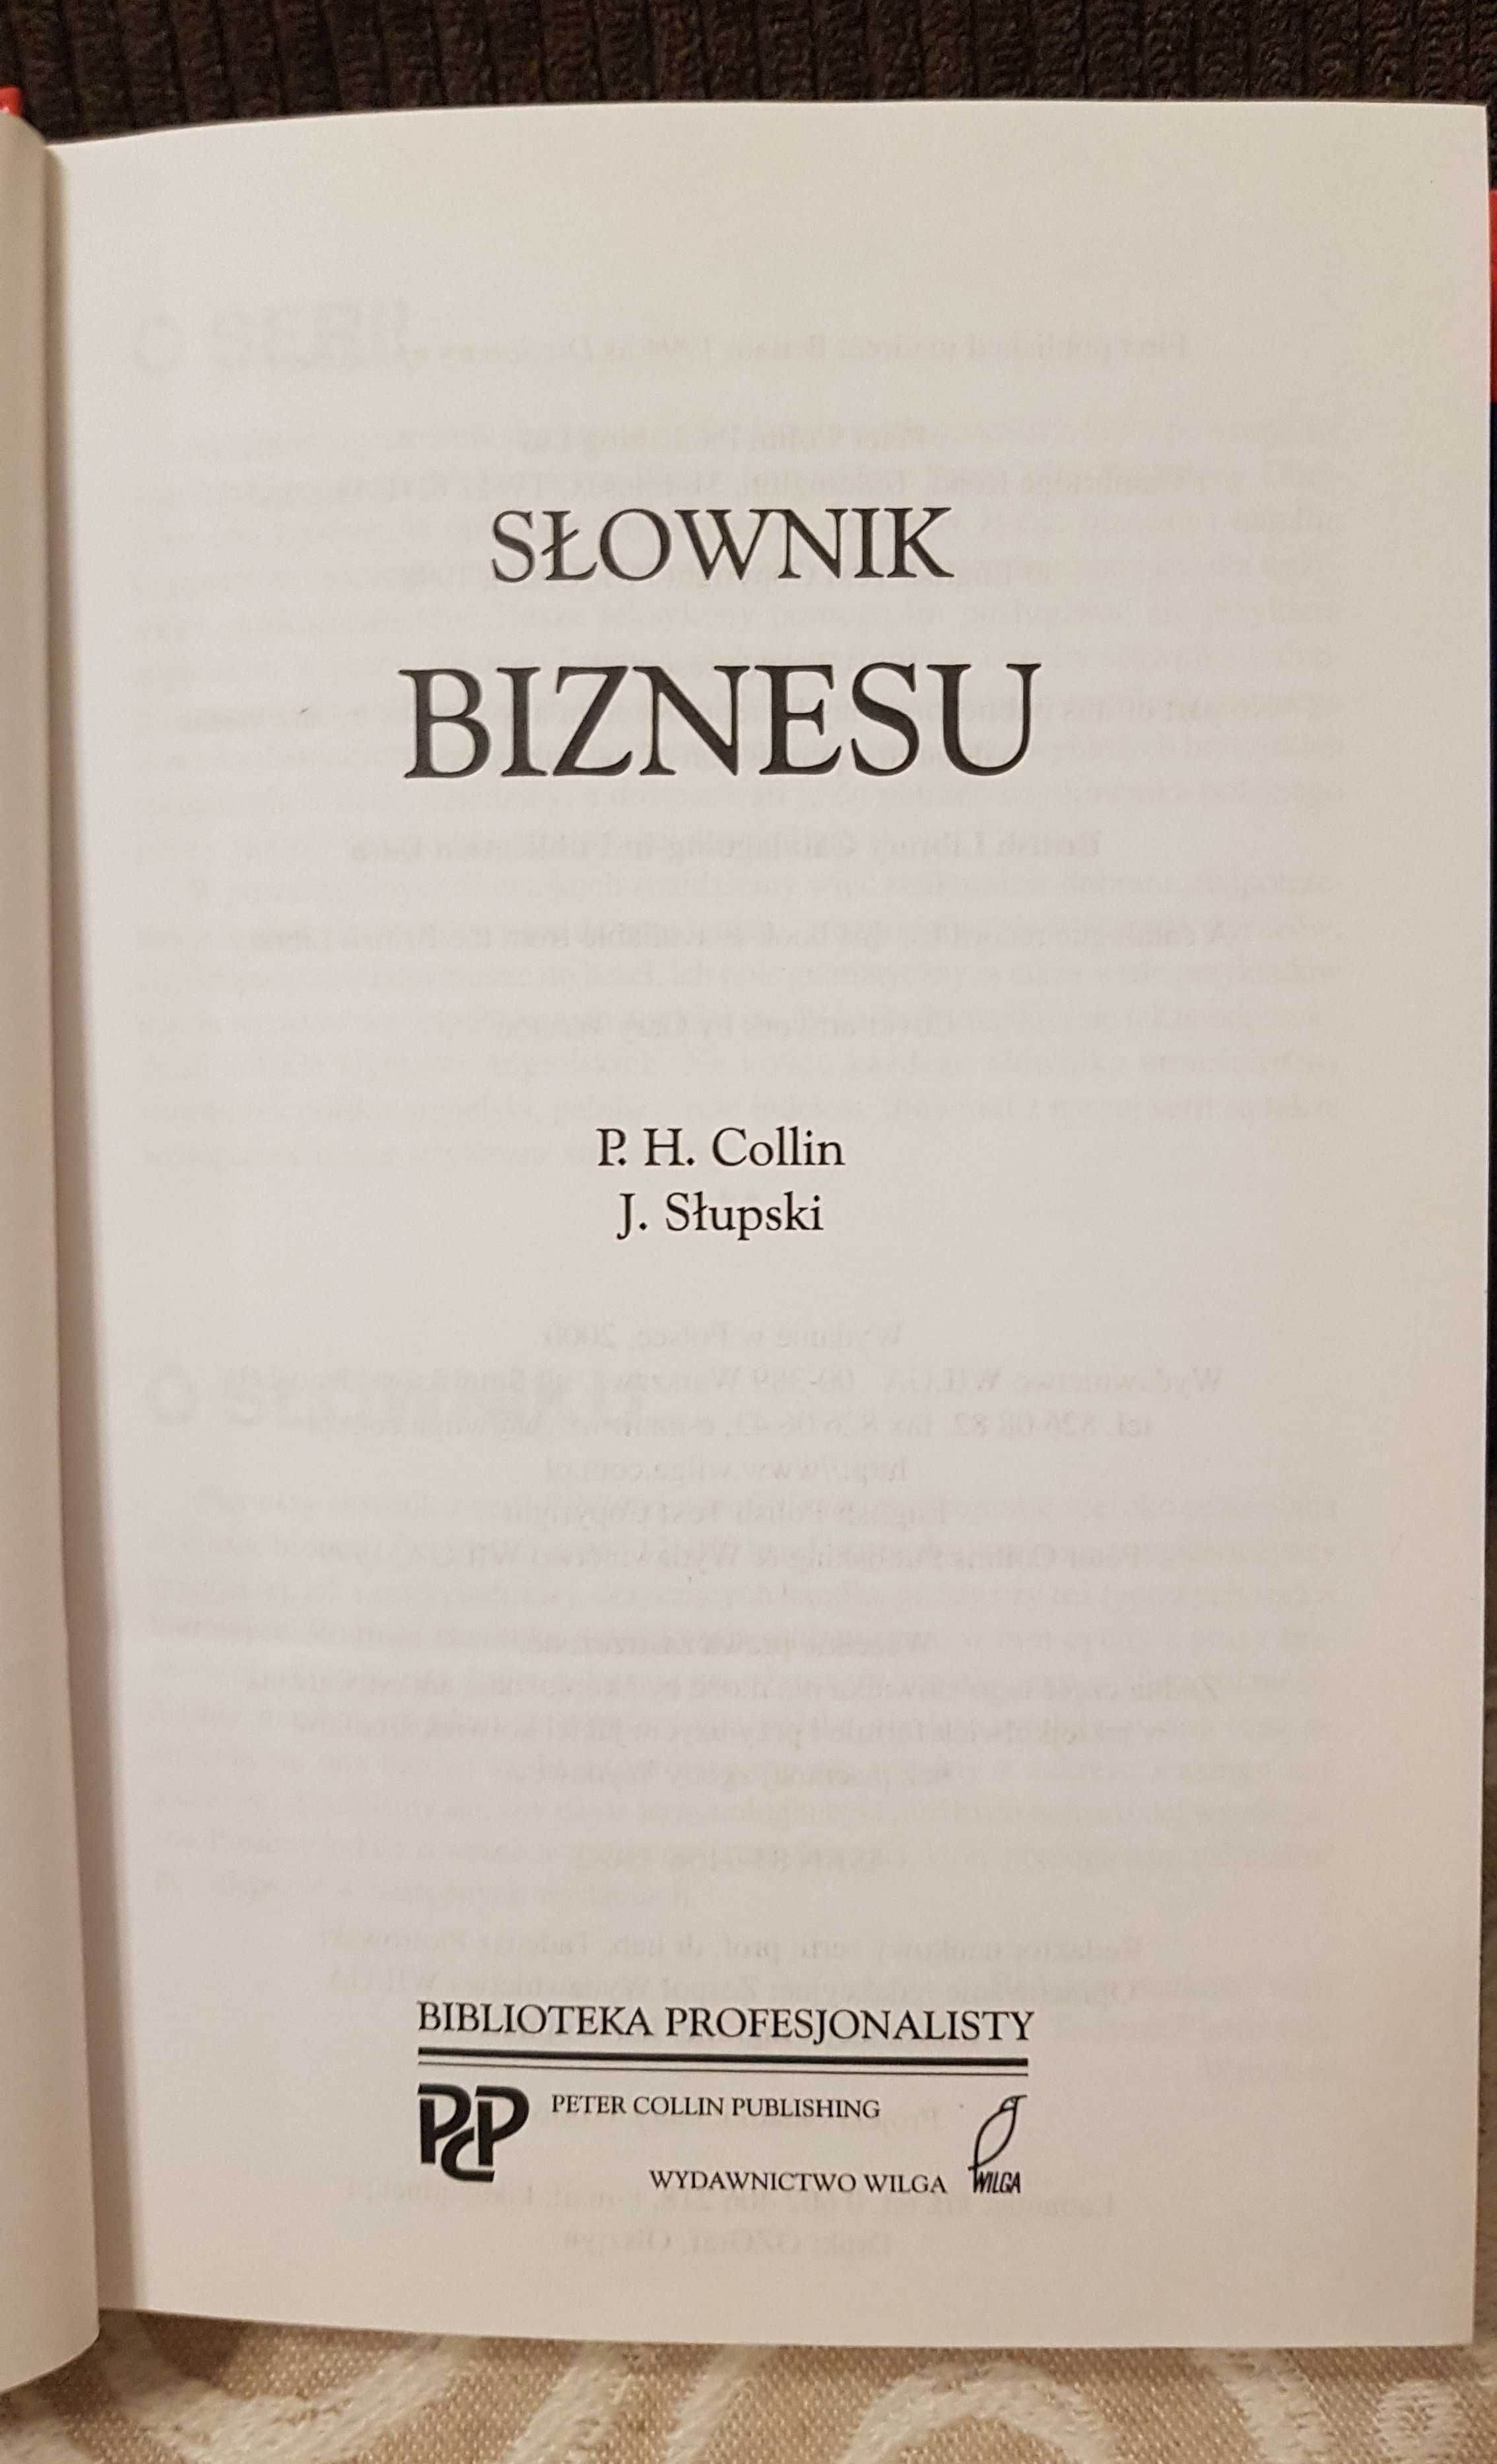 Sprzedam słownik biznesu angielsko-polski